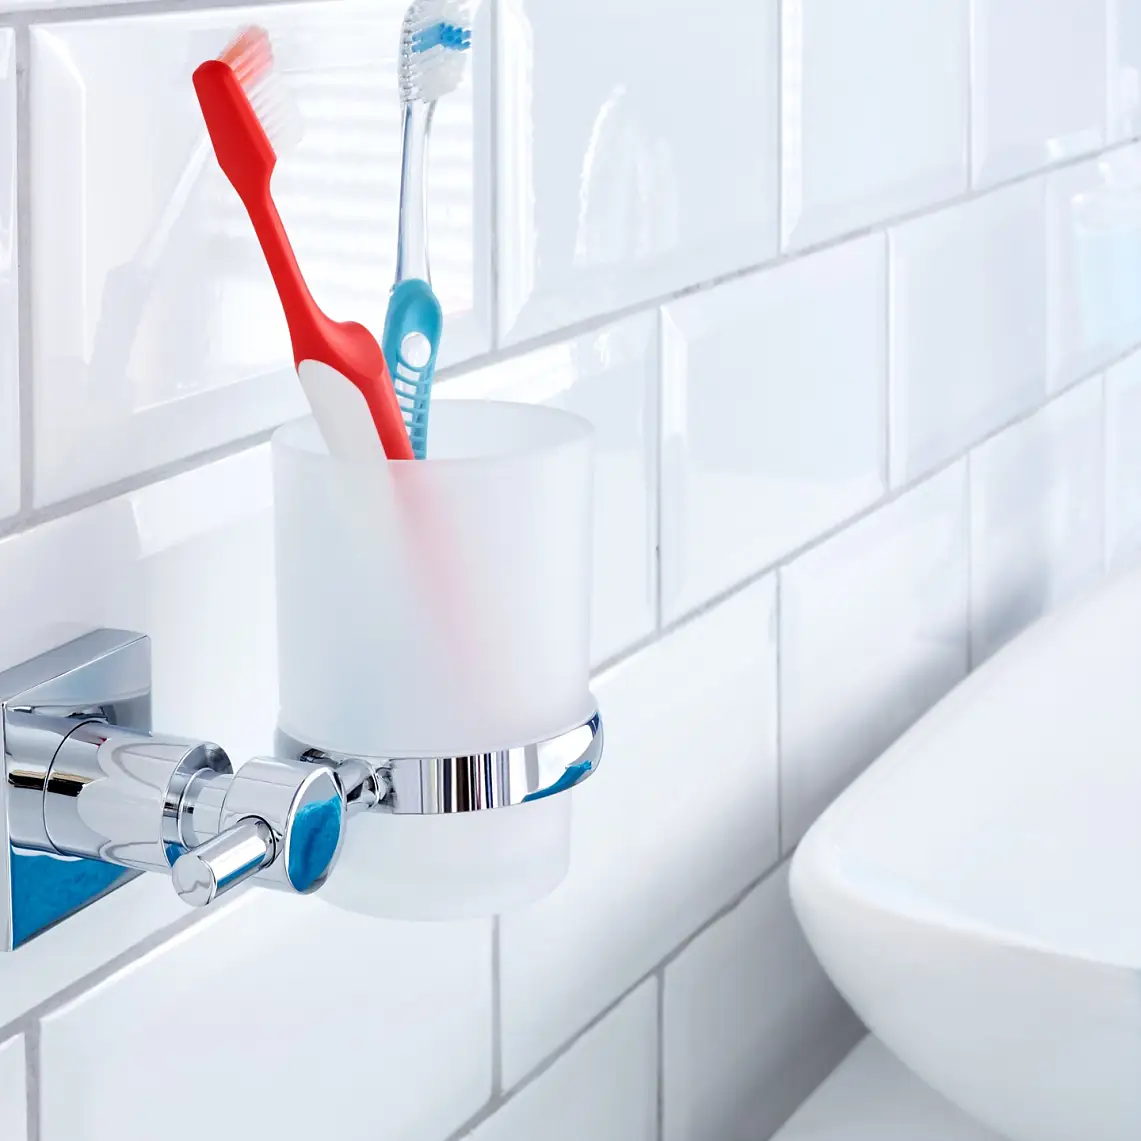 Evita que el vaso del cepillo de dientes ocupe espacio en el lavabo. Ponlo donde mejor se vea y en el lugar donde tiene que estar.